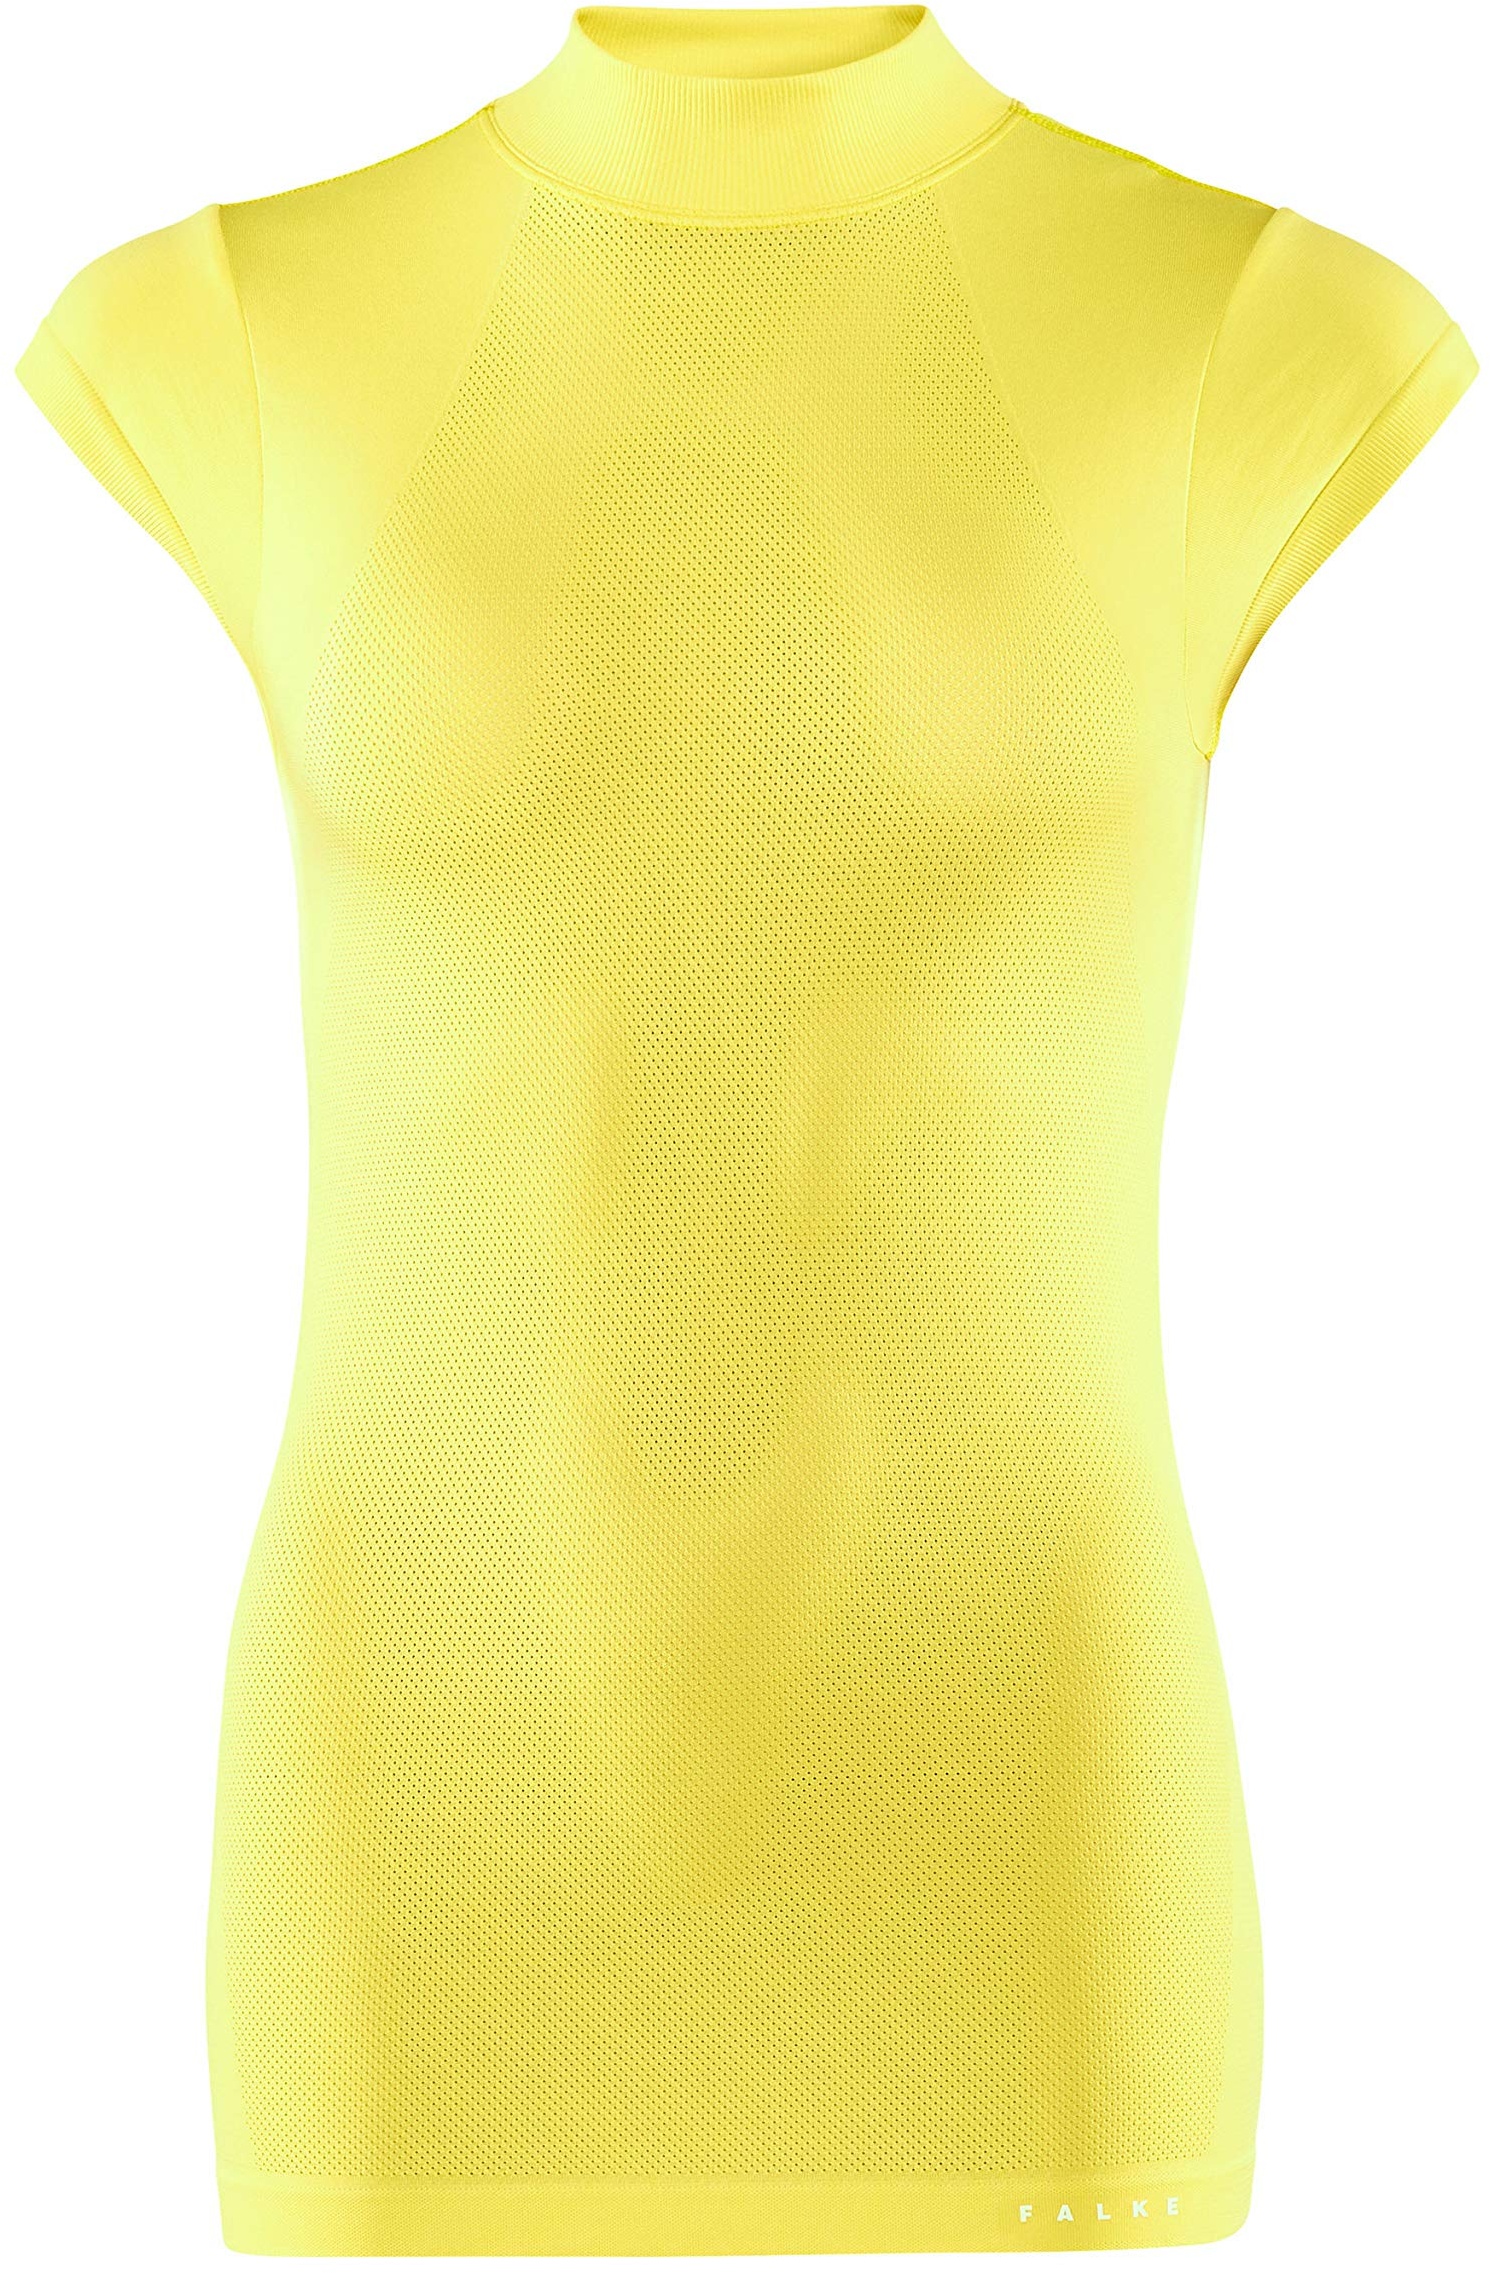 FALKE Damen Shirt-37923 Damen Shirt XS Sonnenlicht